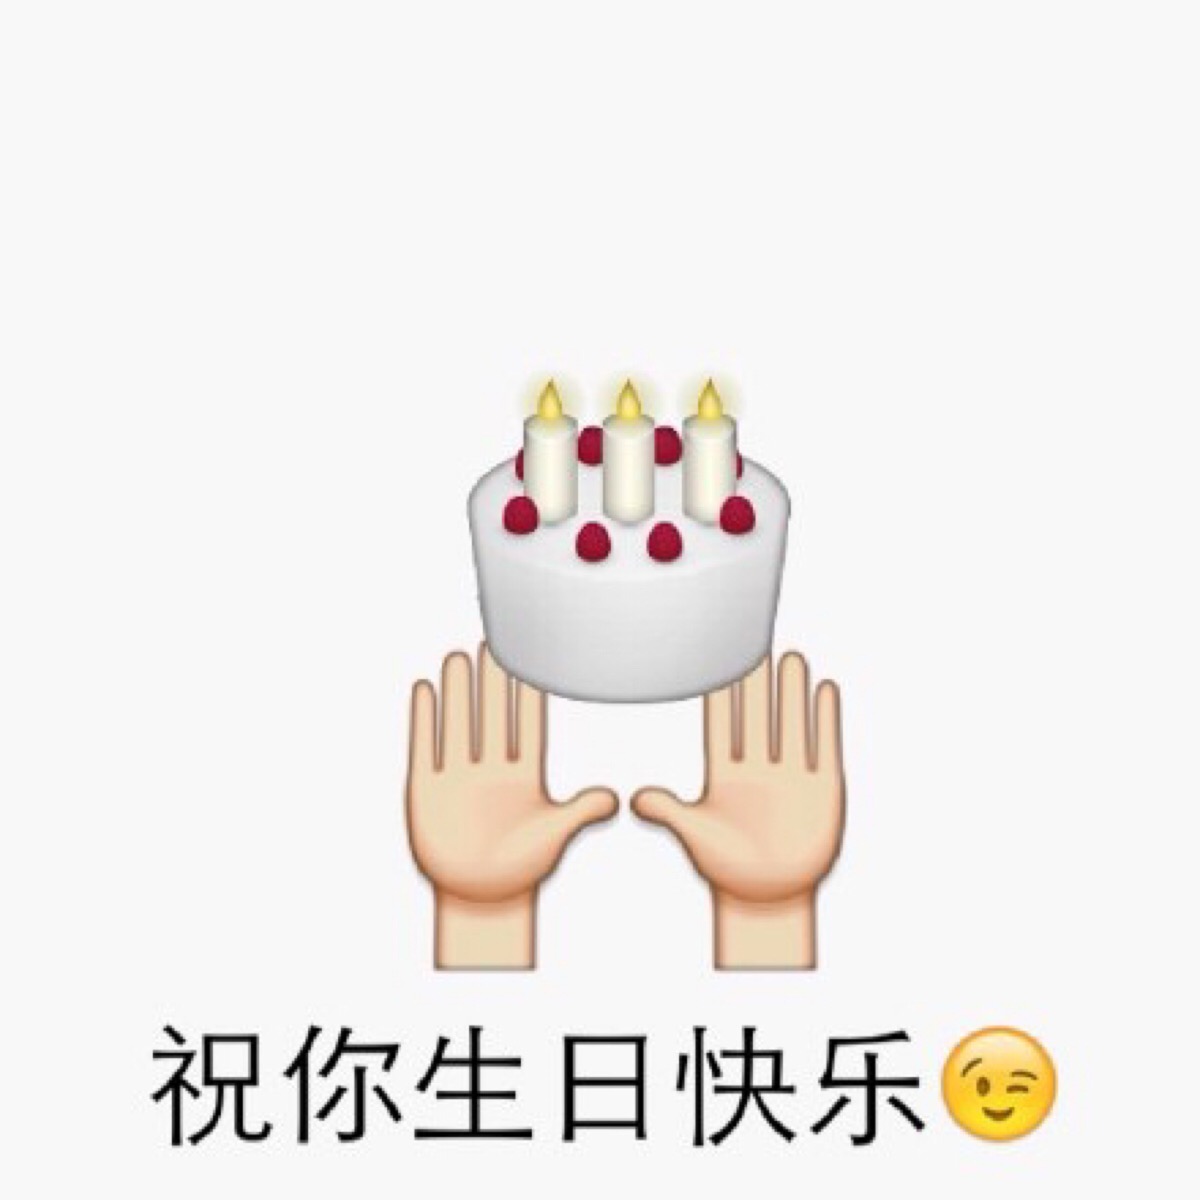 祝你生日快乐 emoji恶搞表情